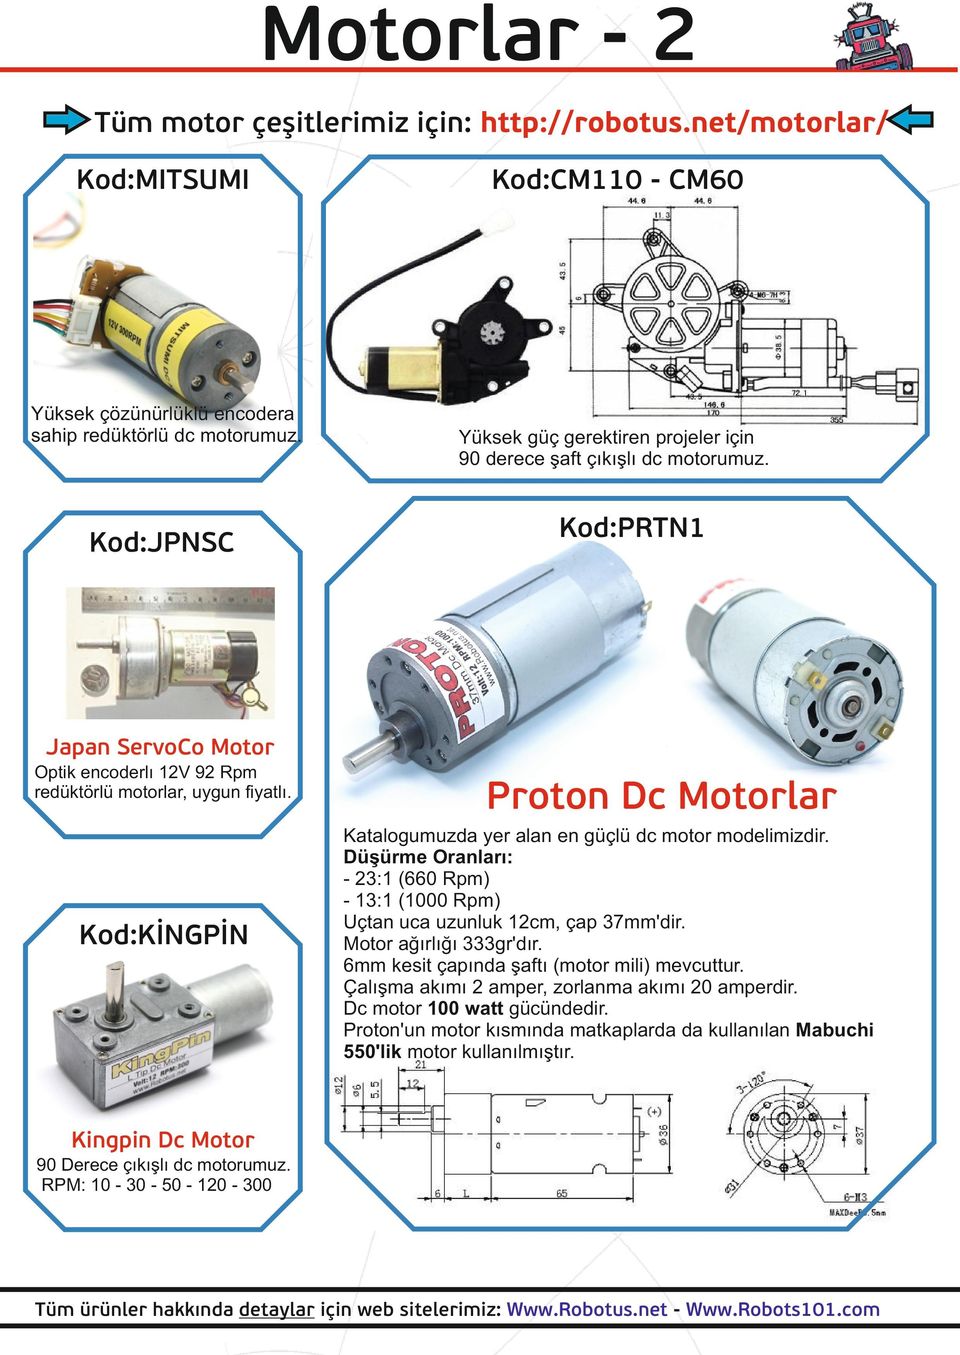 Kod:KİNGPİN Proton Dc Motorlar Katalogumuzda yer alan en güçlü dc motor modelimizdir. Düşürme Oranları: - 23:1 (660 Rpm) - 13:1 (1000 Rpm) Uçtan uca uzunluk 12cm, çap 37mm'dir.